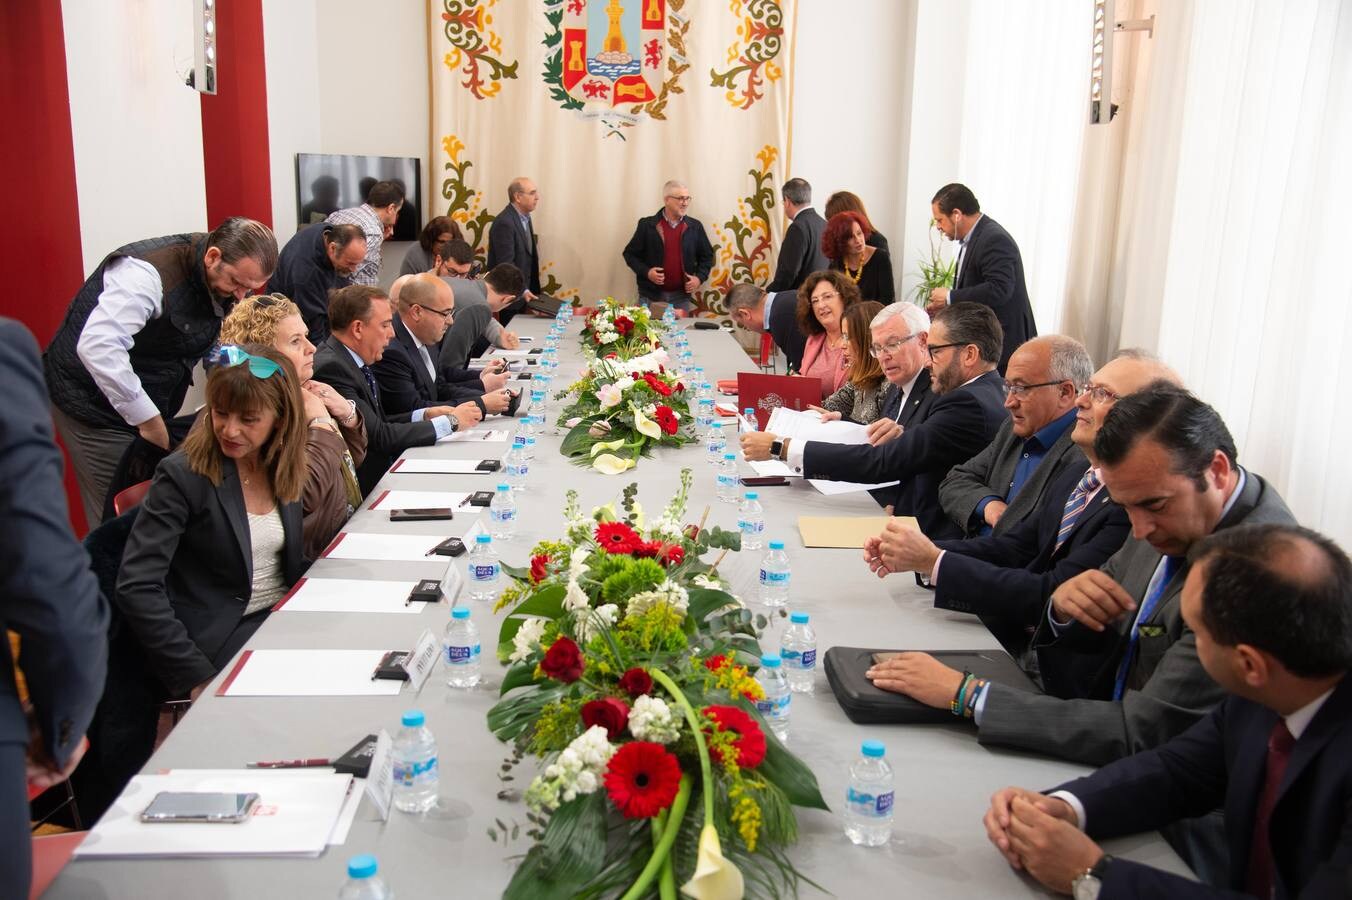 El Pleno del Consejo Económico y Social (CES) aprobó este miércoles, en una reunión celebrada en el Palacio Consistorial de Cartagena, el dictamen sobre el proyecto de decreto regional que garantiza la gratuidad y universalidad de la atención temprana, a niños de cero a seis años